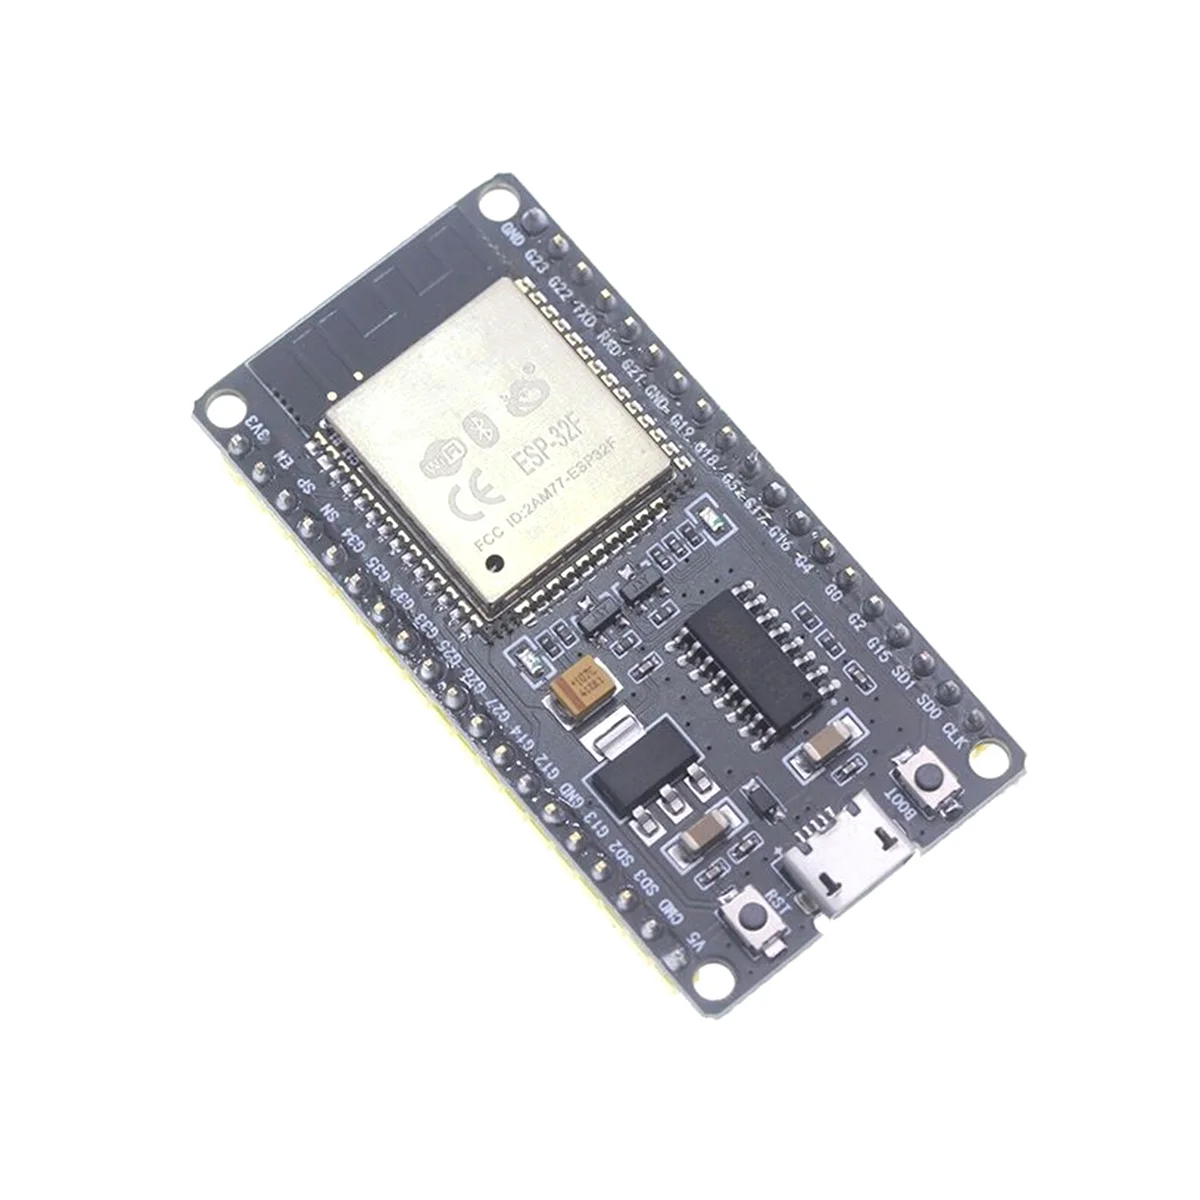 ESP32F modul fejlesztő kártya CH340 illesztőprogram vezeték nélküli WiFi Bluetooth fejlesztőkártya 1,3 hüvelykes színes képernyővel - 4